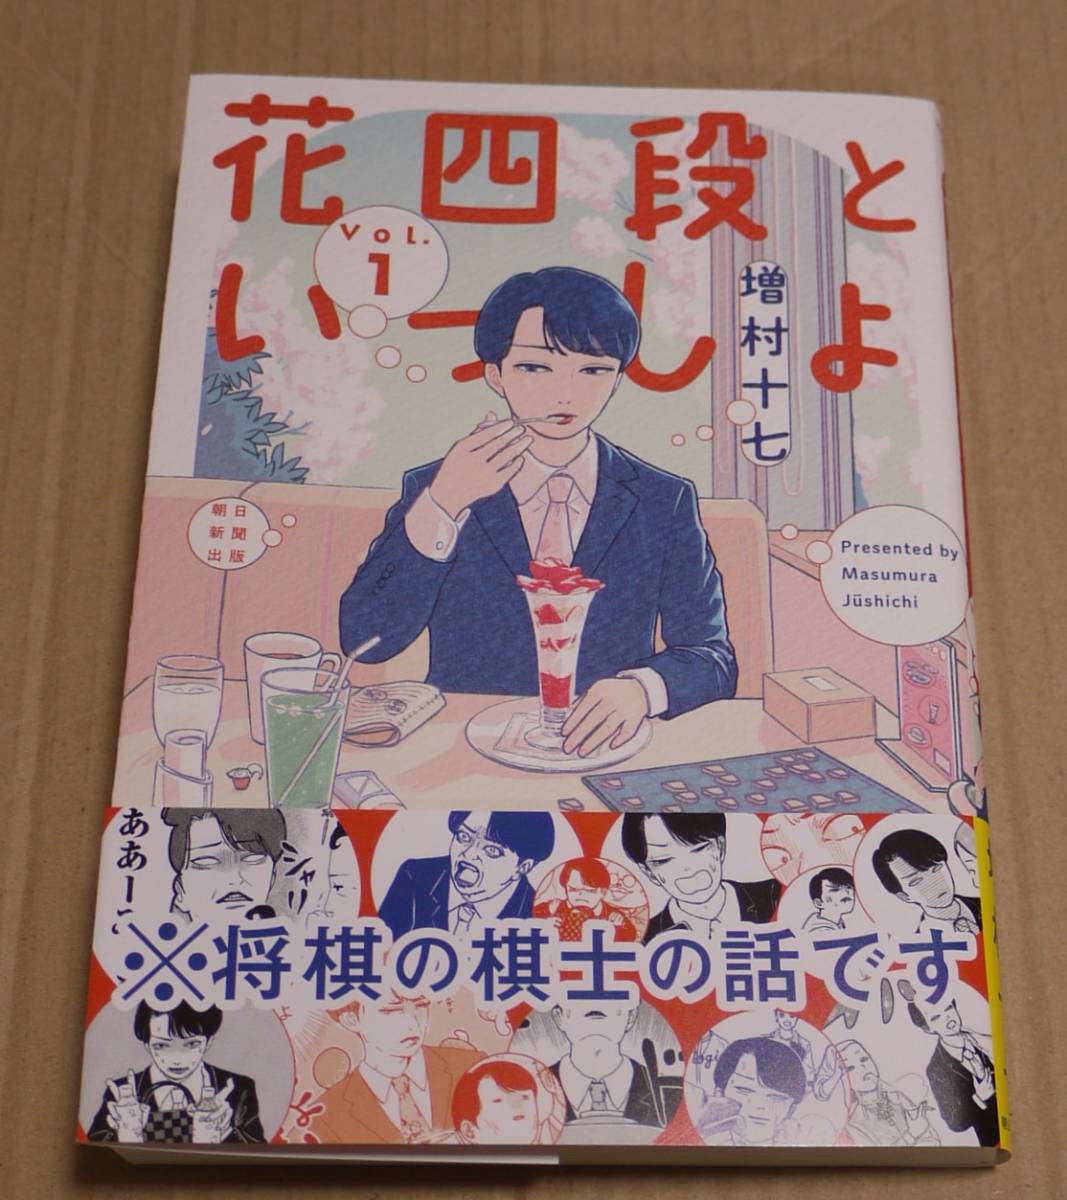 مجلد واحد من Hana Yodan to Issho (Jushichi Masumura) مع رسوم توضيحية وتوقيعات مرسومة يدويًا. تتضمن بطاقة بريدية. انقر فوق نشر الشحن (185 ينًا) متضمنًا., كاريكاتير, سلع الانمي, لافتة, اللوحة المرسومة باليد